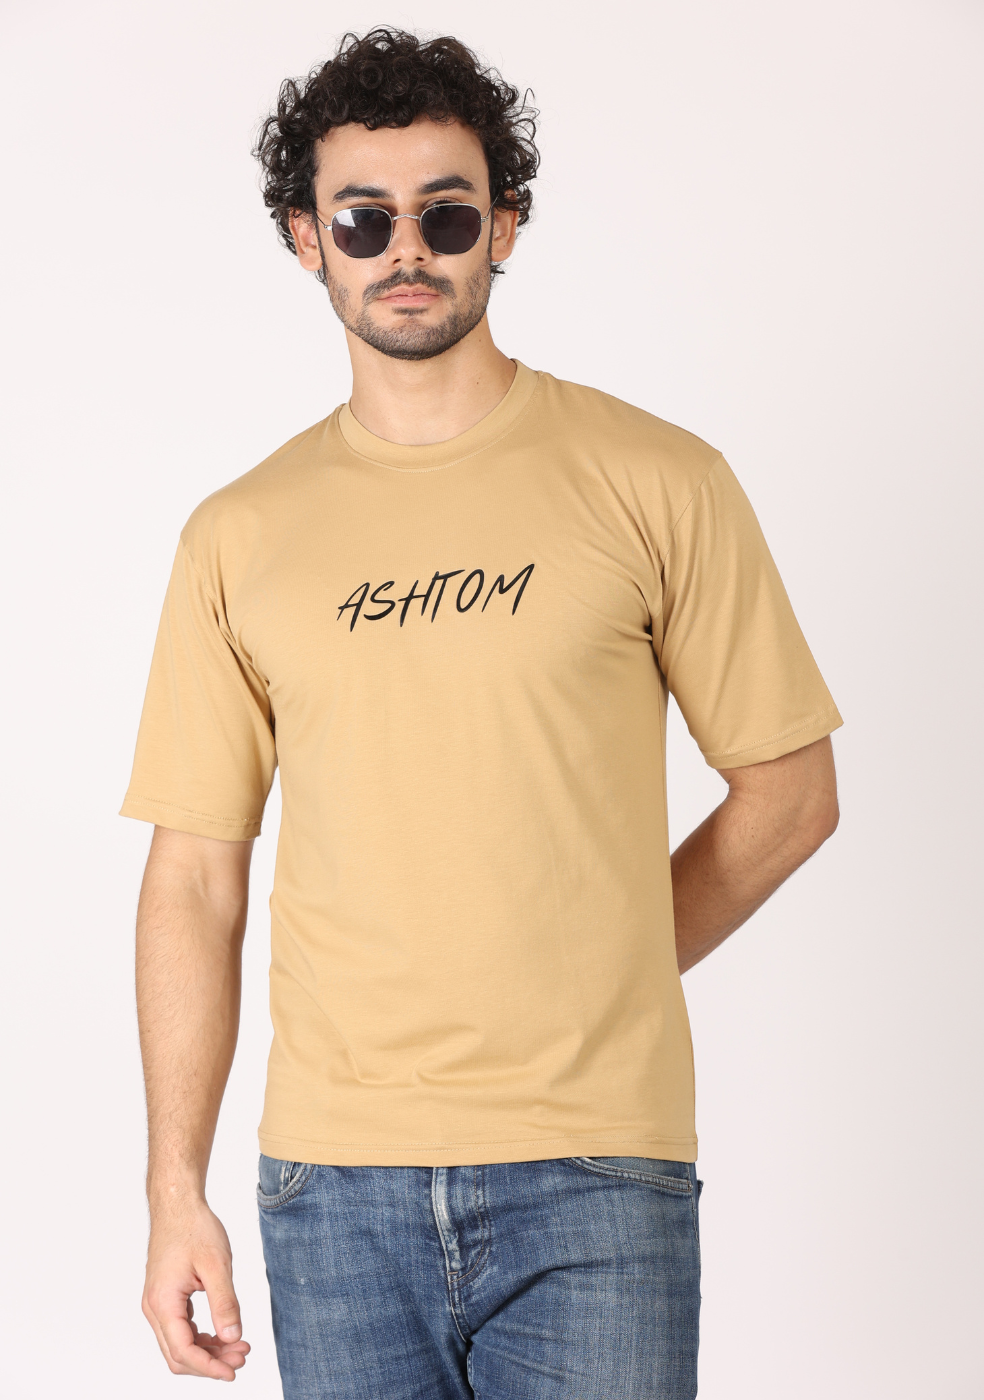 Men's Half-Sleeve Round Neck T-Shirts